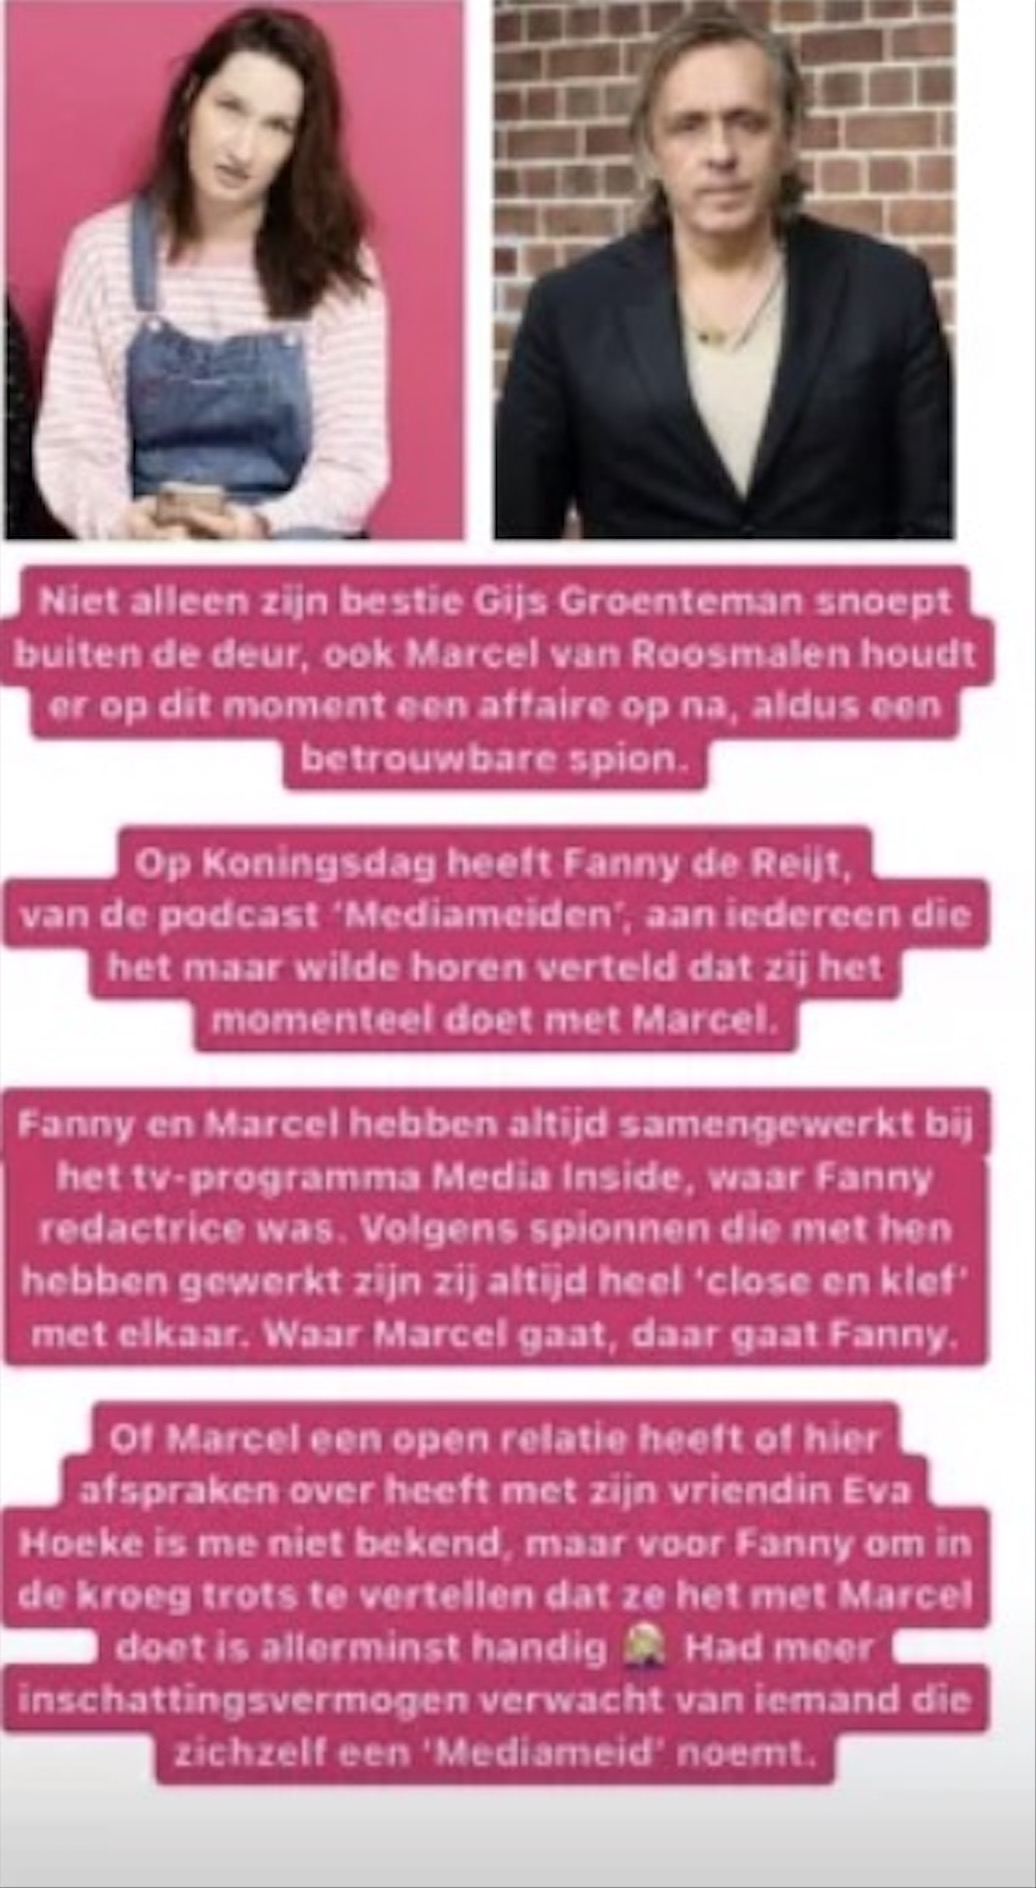 Marcel van Roosmalen betrapt op affaire met bekende dame